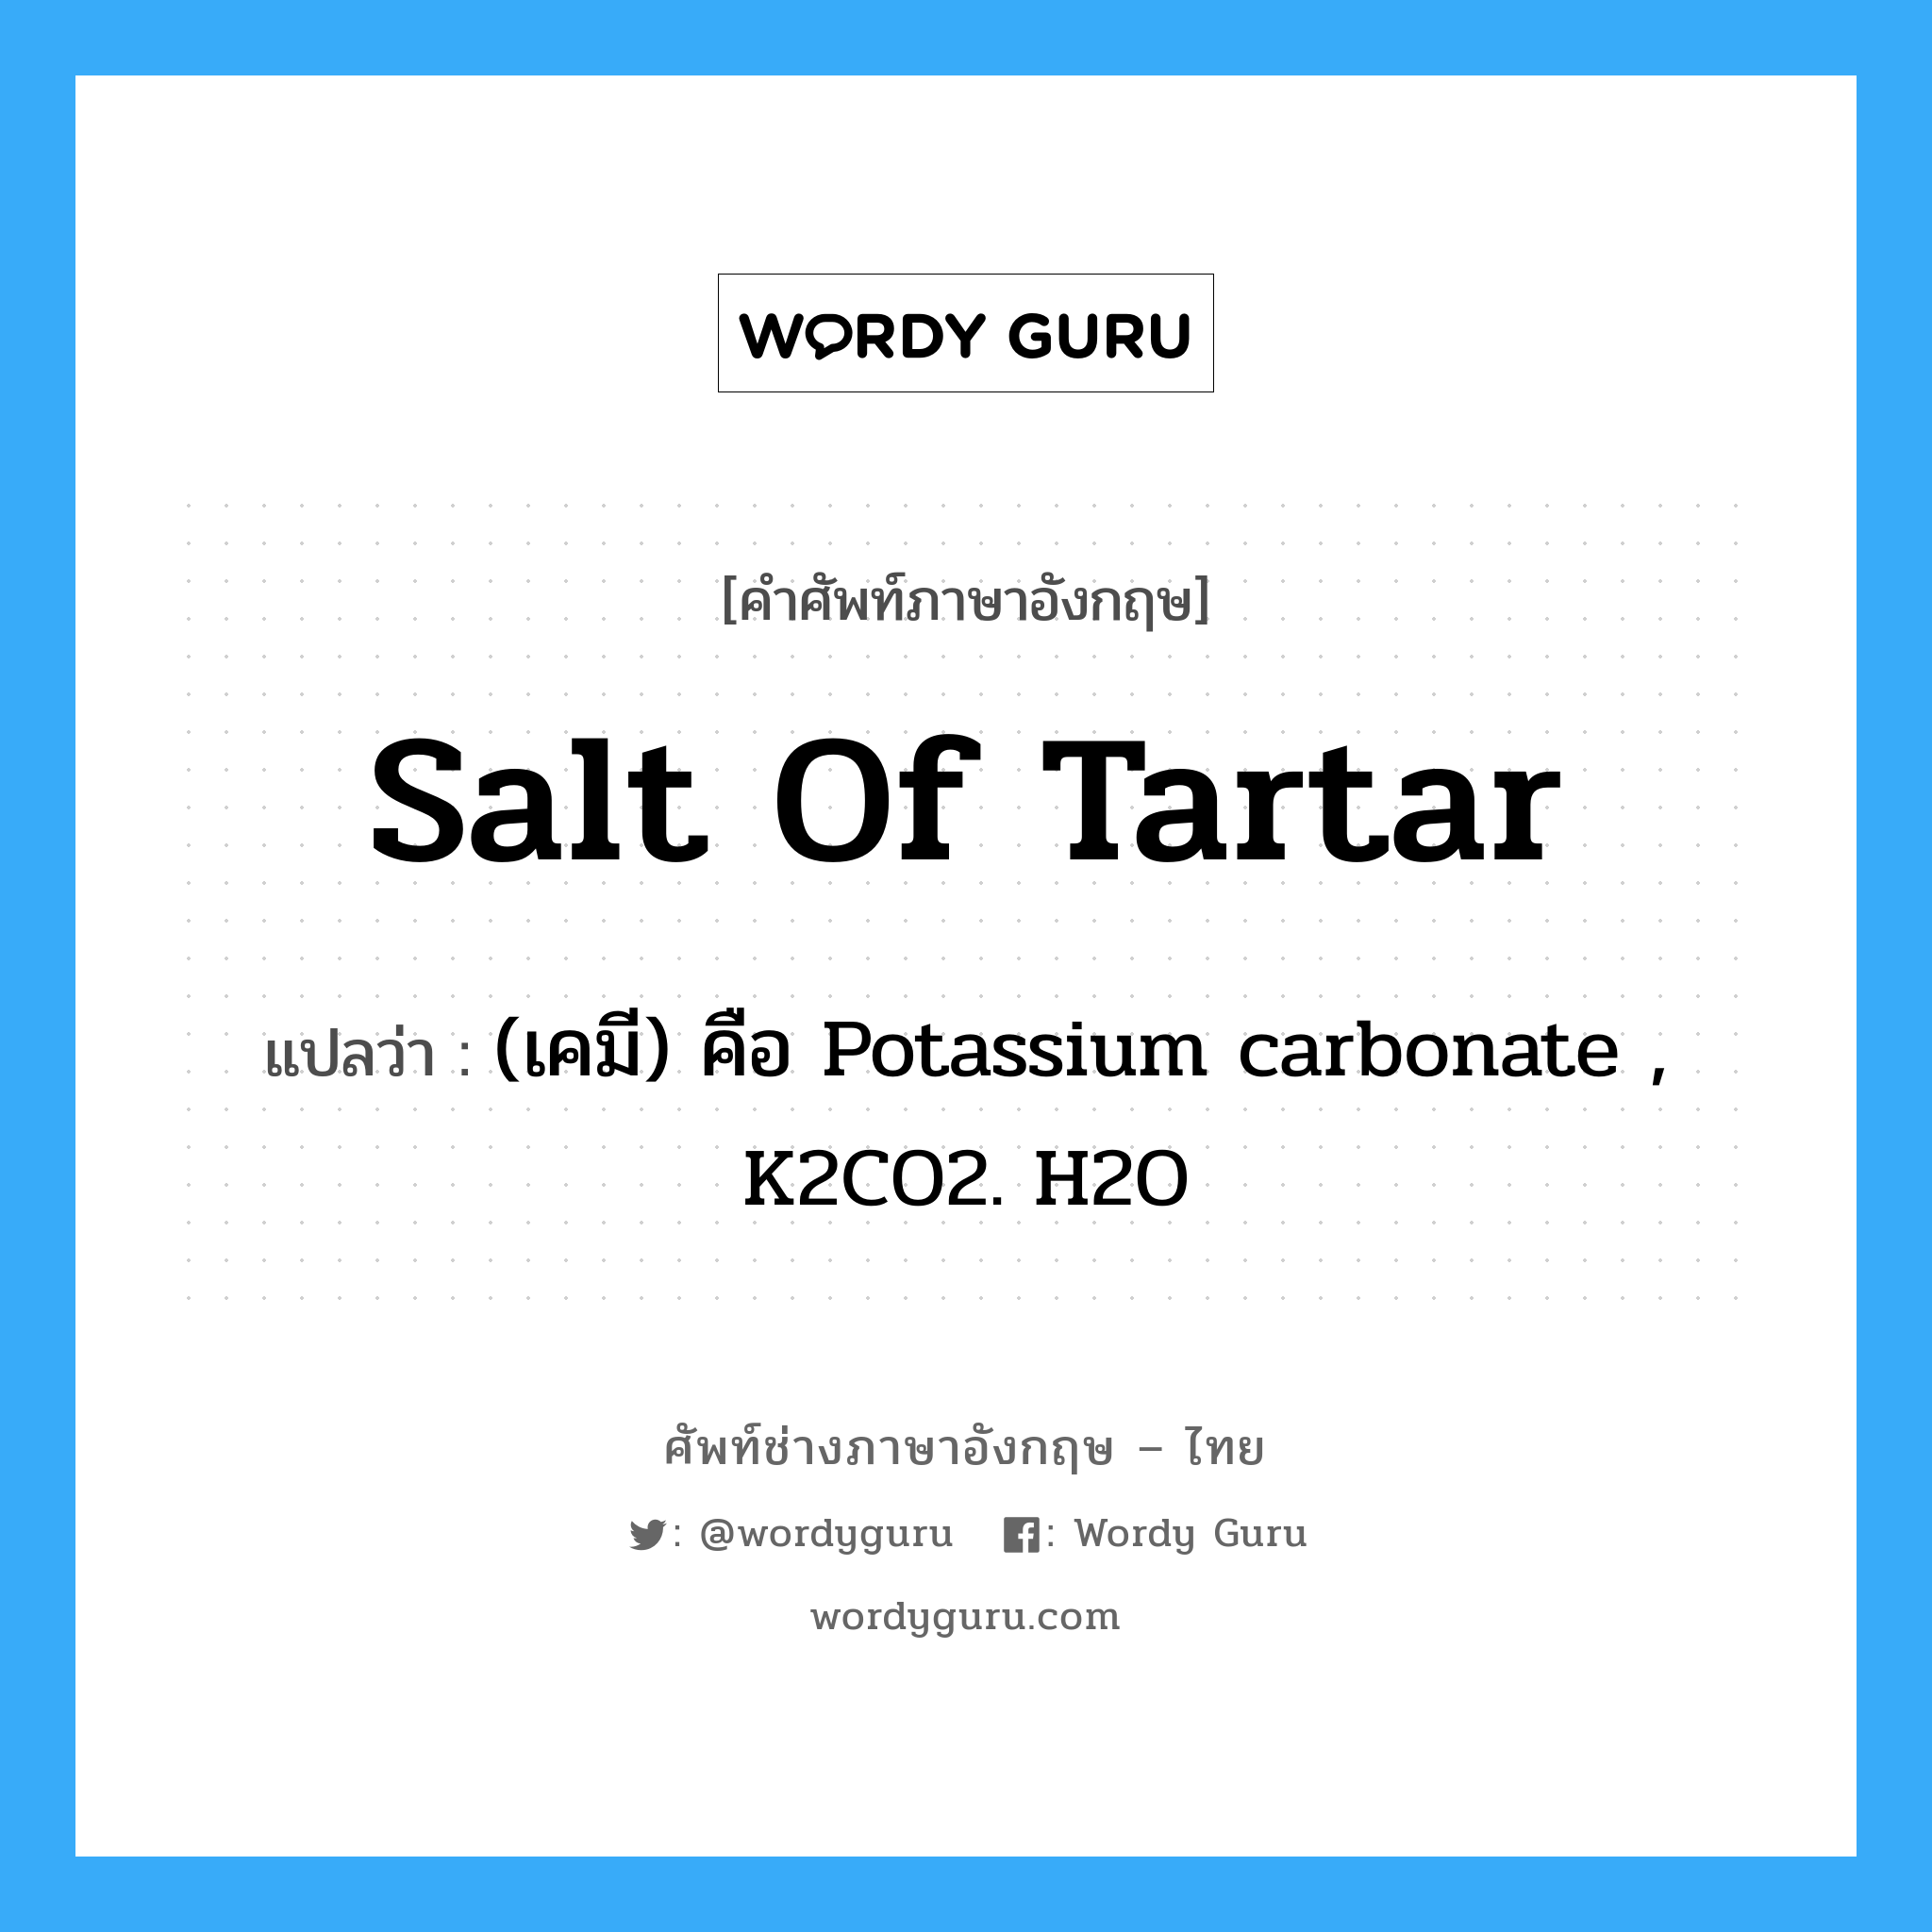 salt of tartar แปลว่า?, คำศัพท์ช่างภาษาอังกฤษ - ไทย salt of tartar คำศัพท์ภาษาอังกฤษ salt of tartar แปลว่า (เคมี) คือ Potassium carbonate , K2CO2. H2O